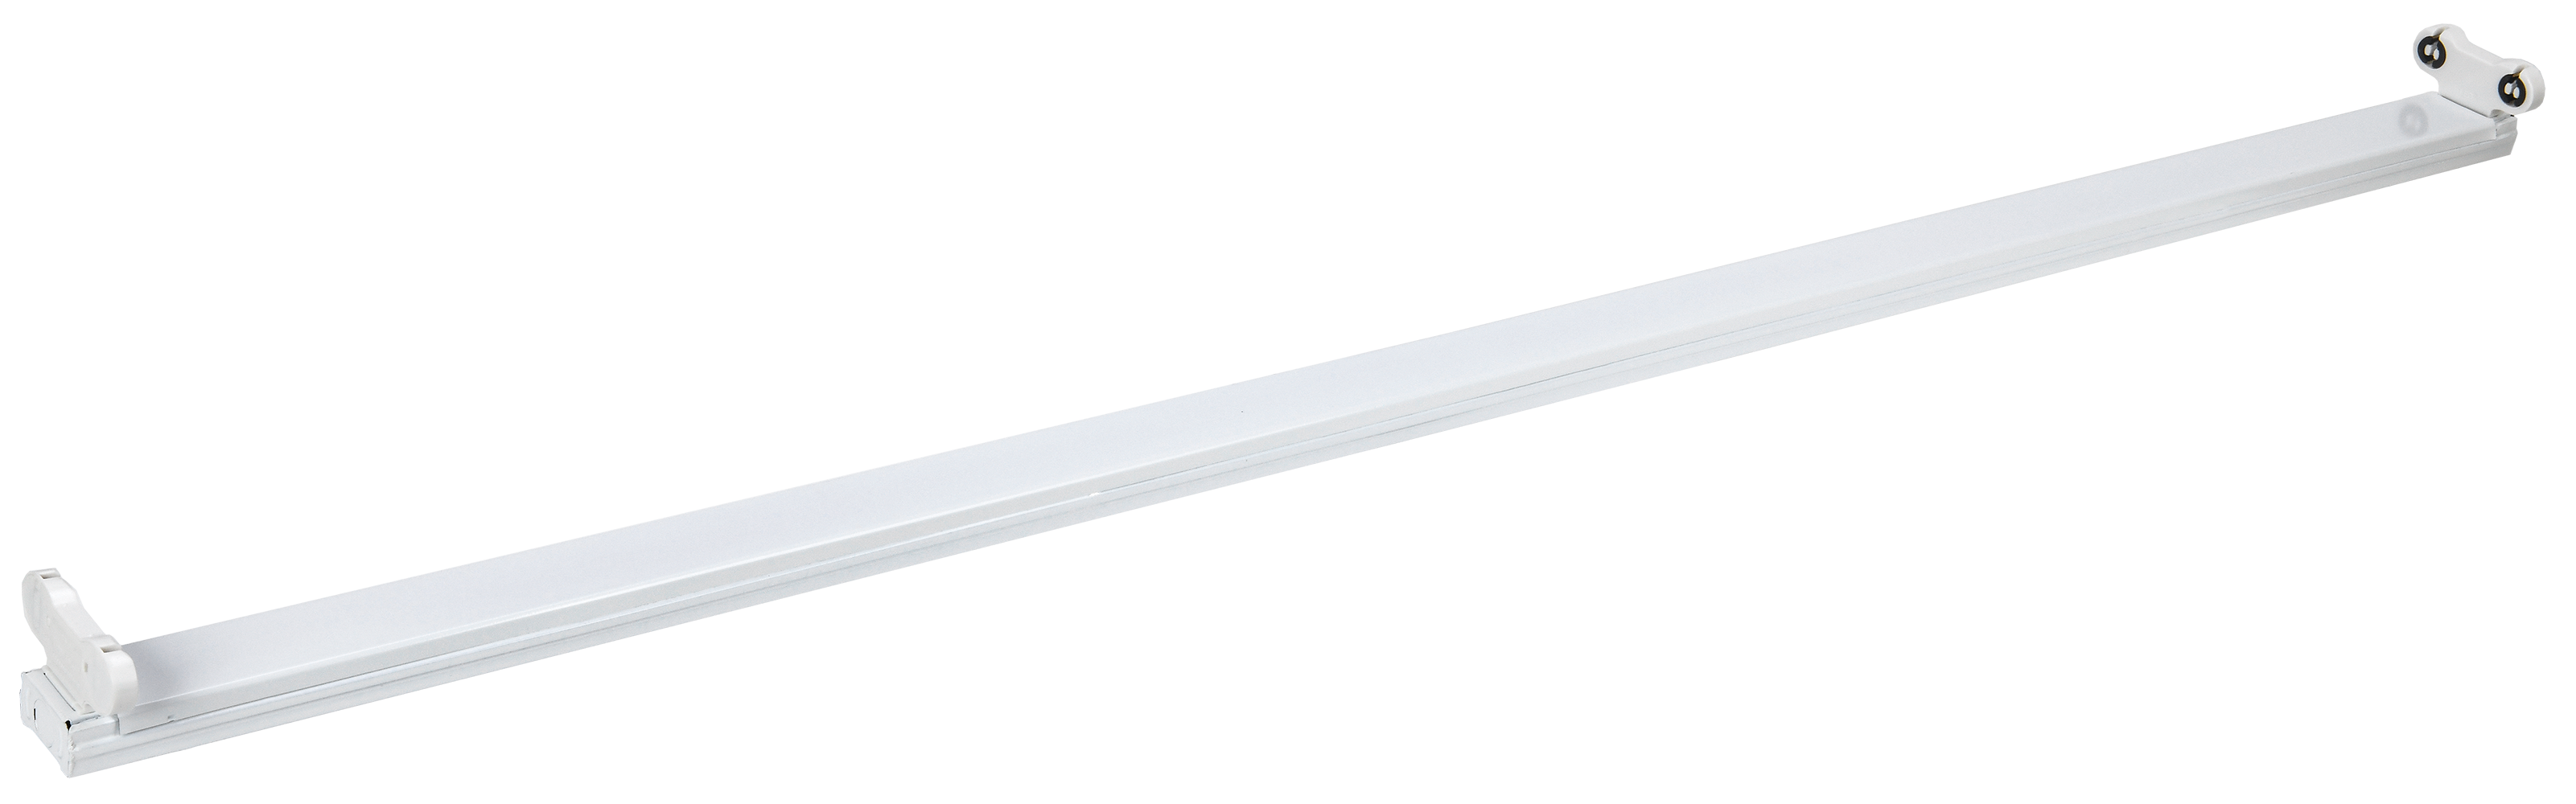 Светильник ДБО 1003 под LED лампу 2хТ8 1200мм IP20 | код LDBO0-1003-01-120-K01 | IEK (4шт.в упак.)